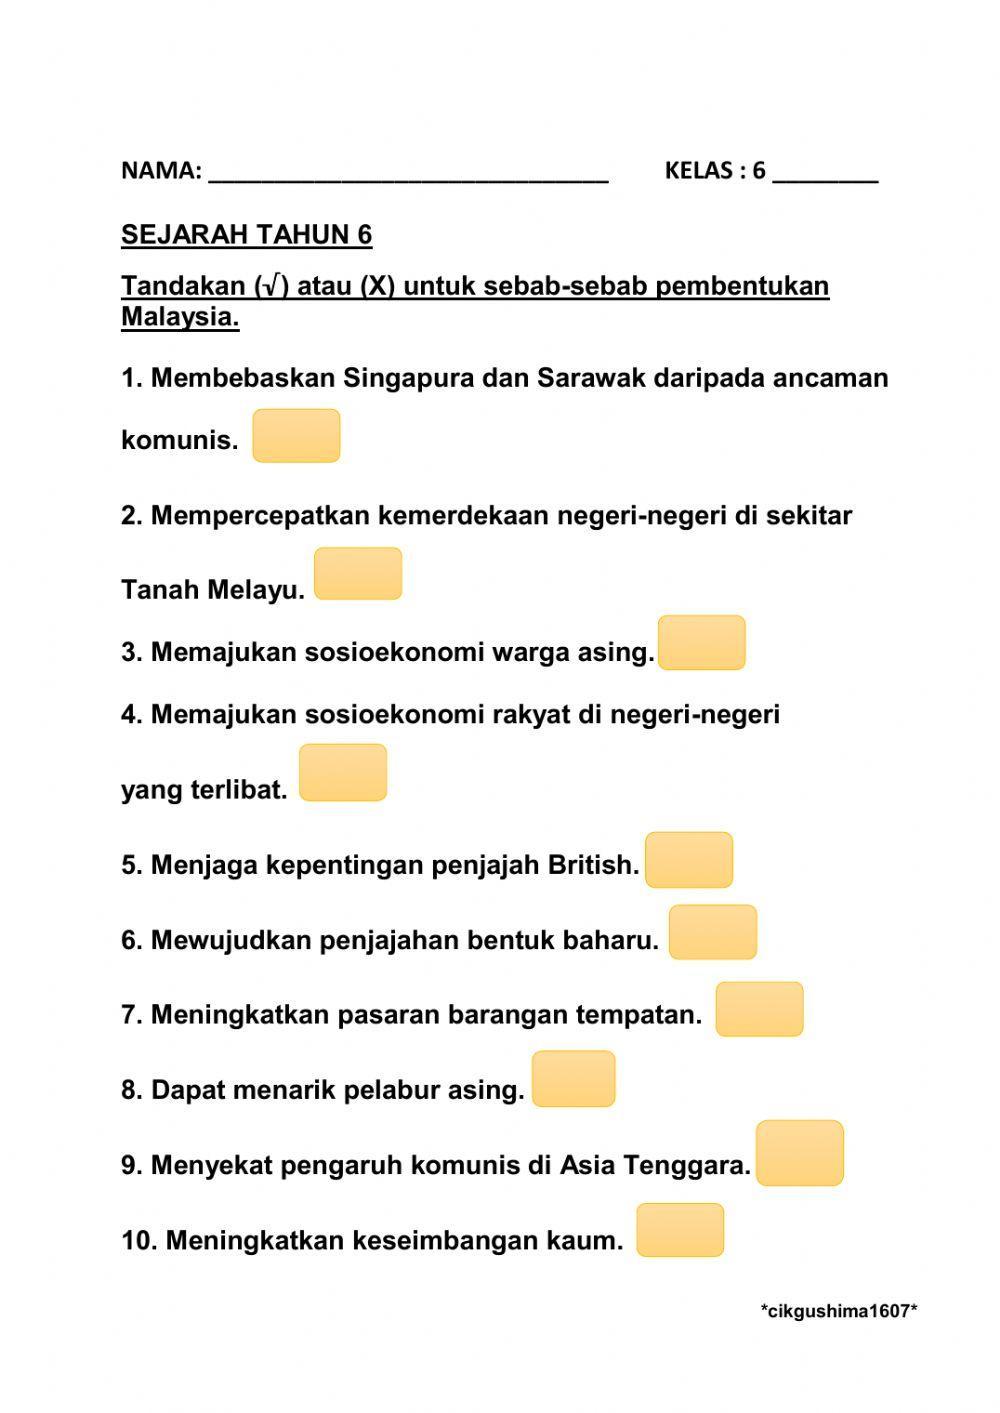 Sebab-sebab pembentukan malaysia sejt6